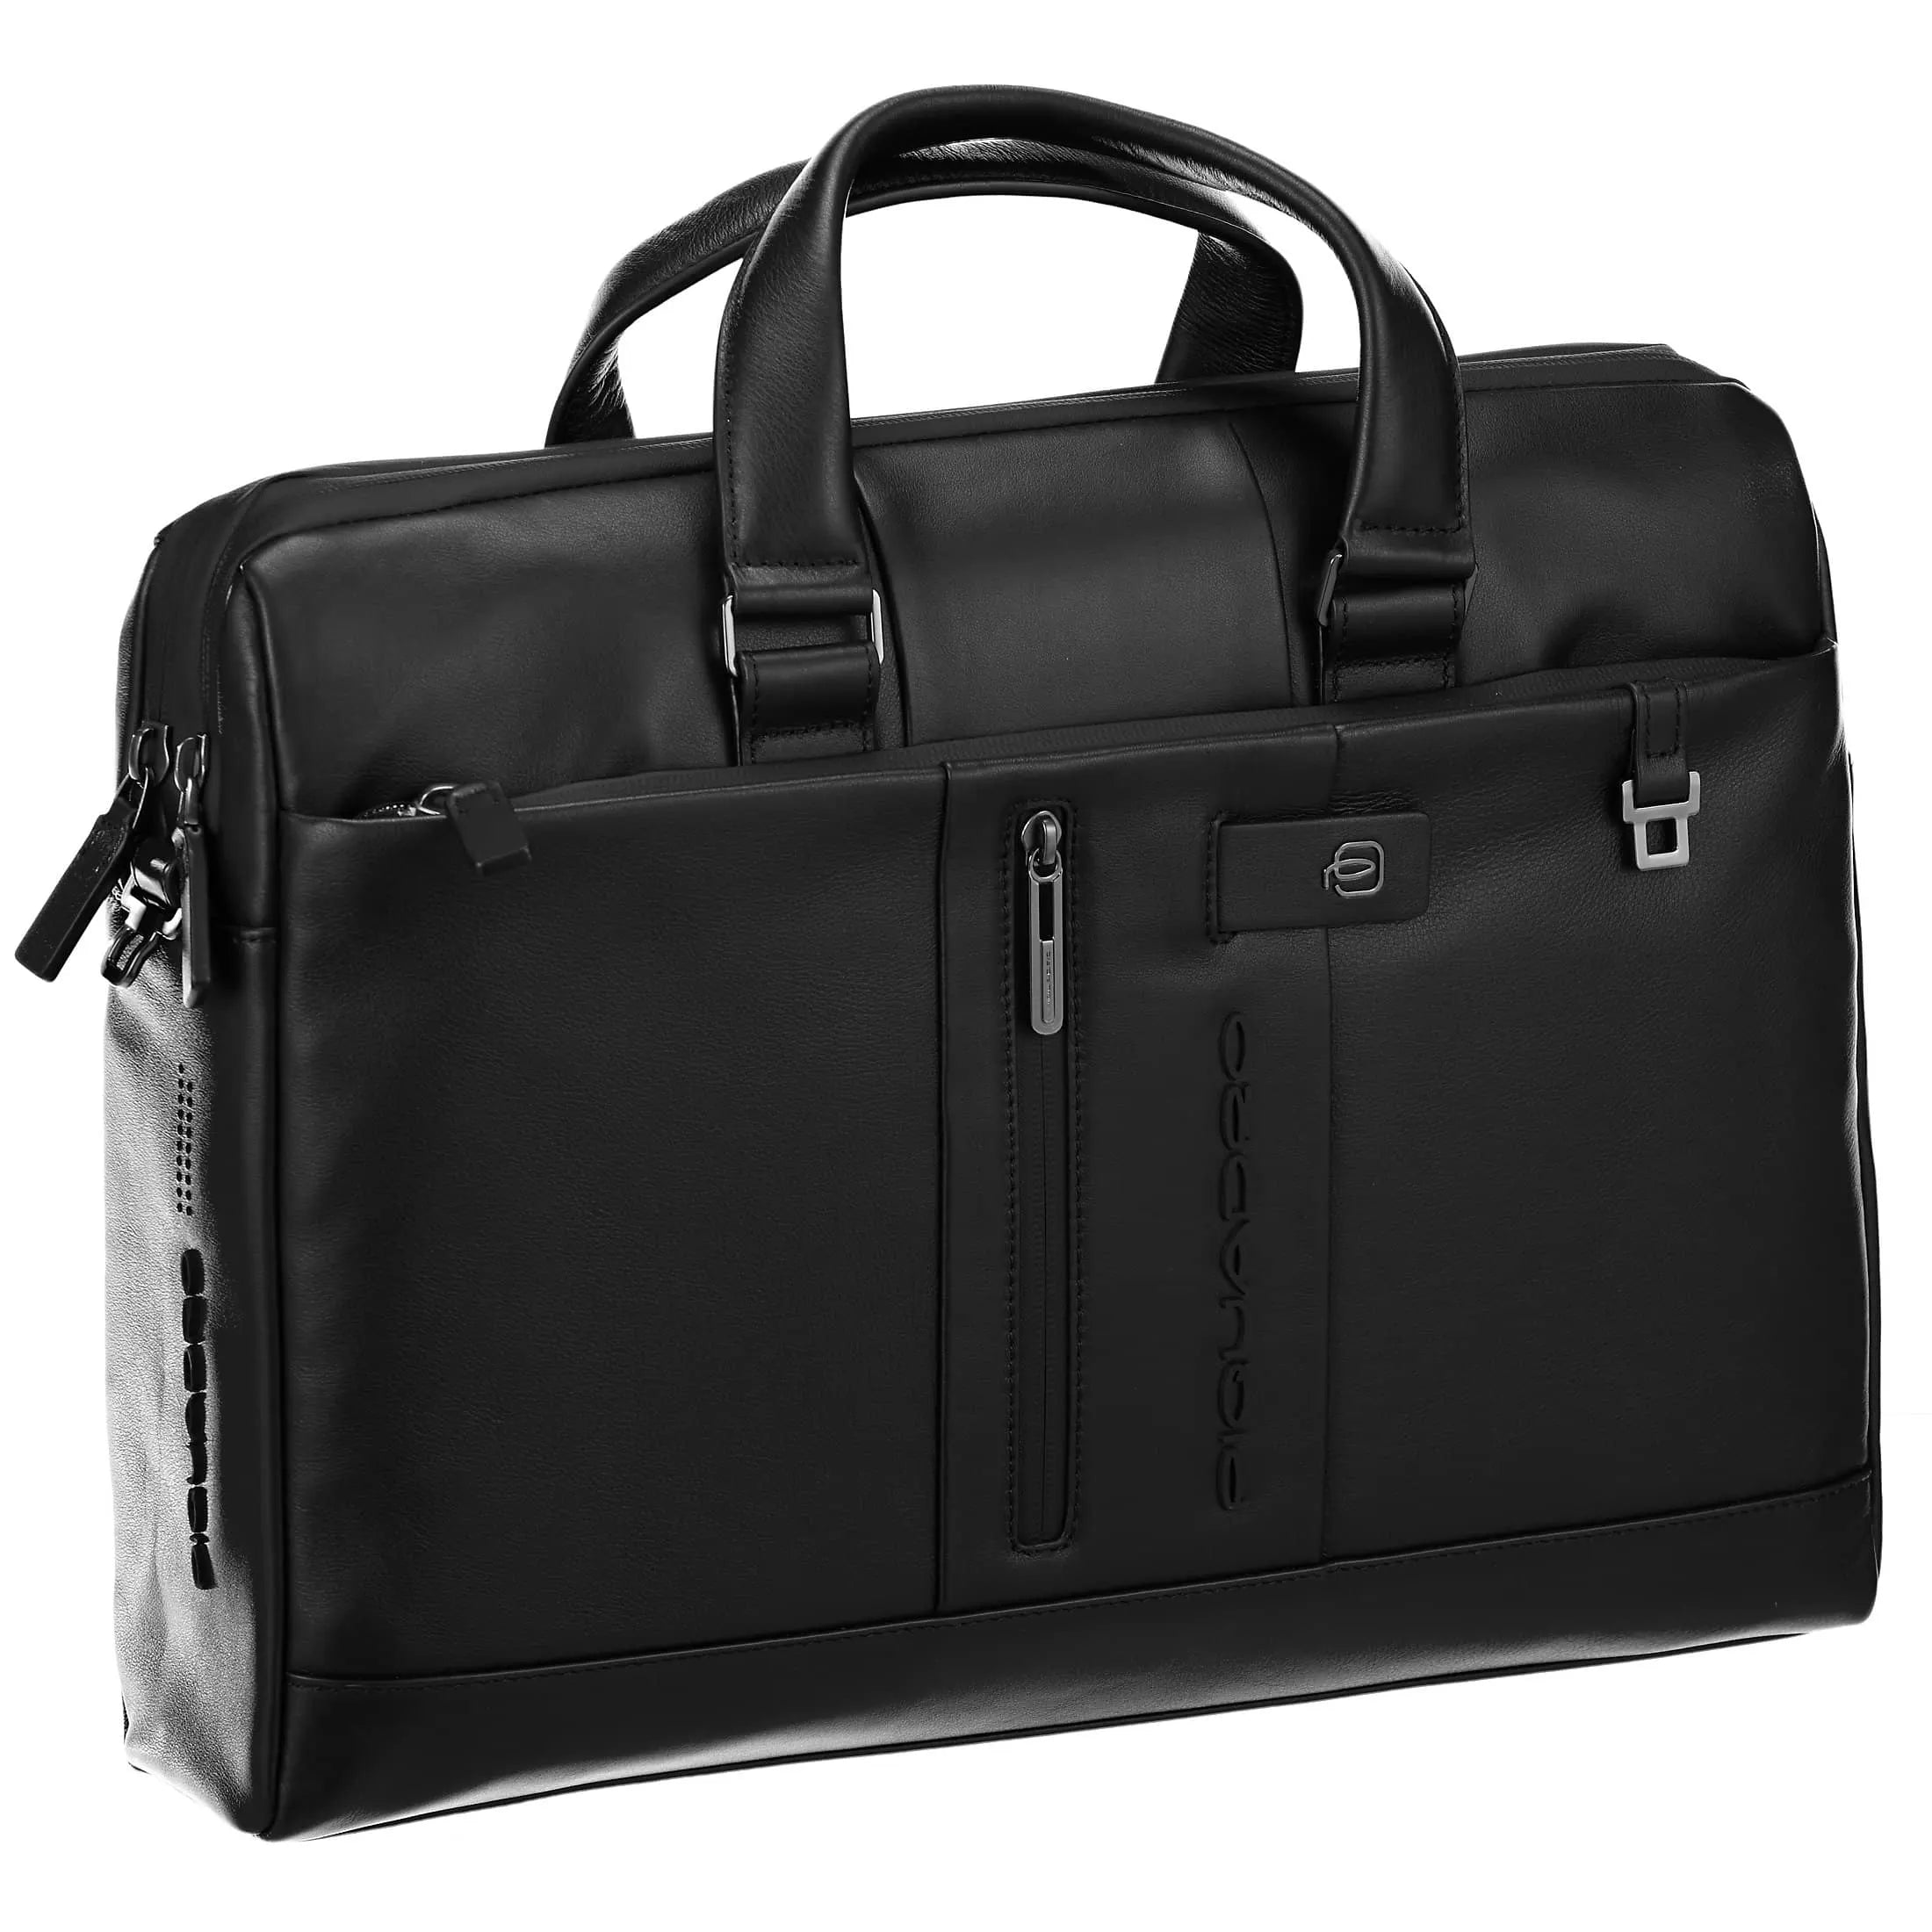 Piquadro Urban sac pour ordinateur portable 42 cm - noir